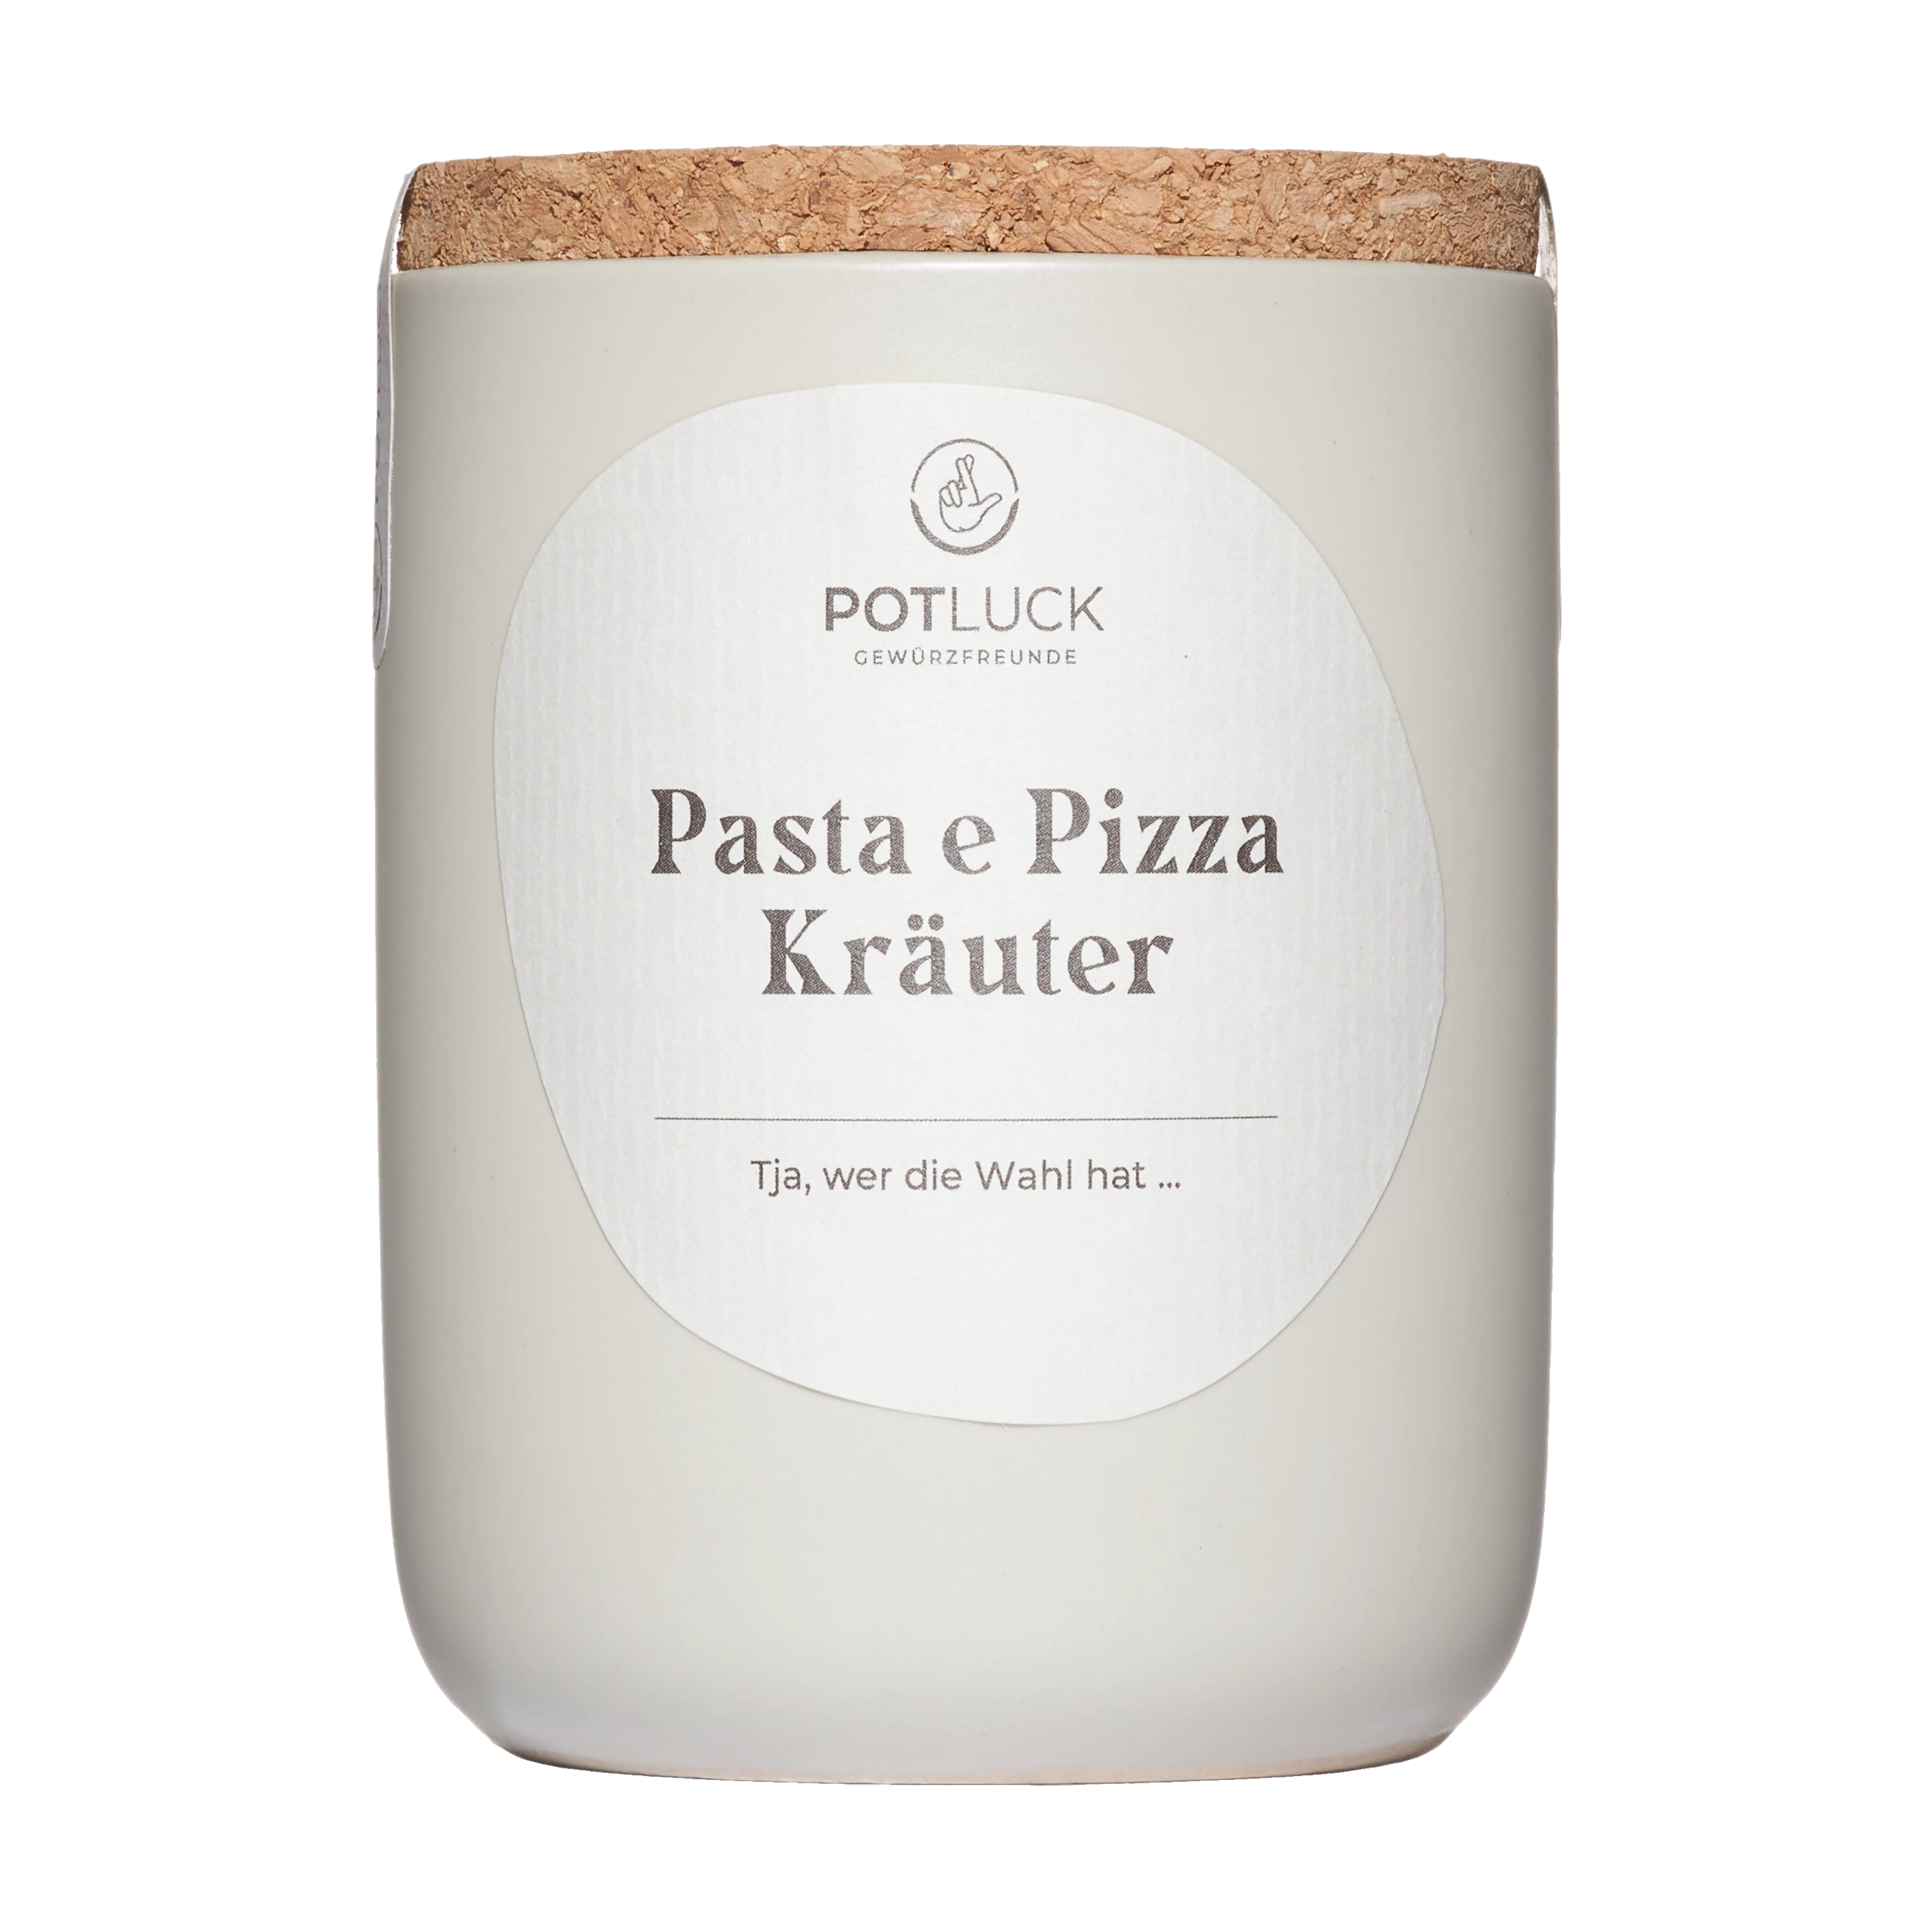 Potluck Pasta e Pizza Kräuter